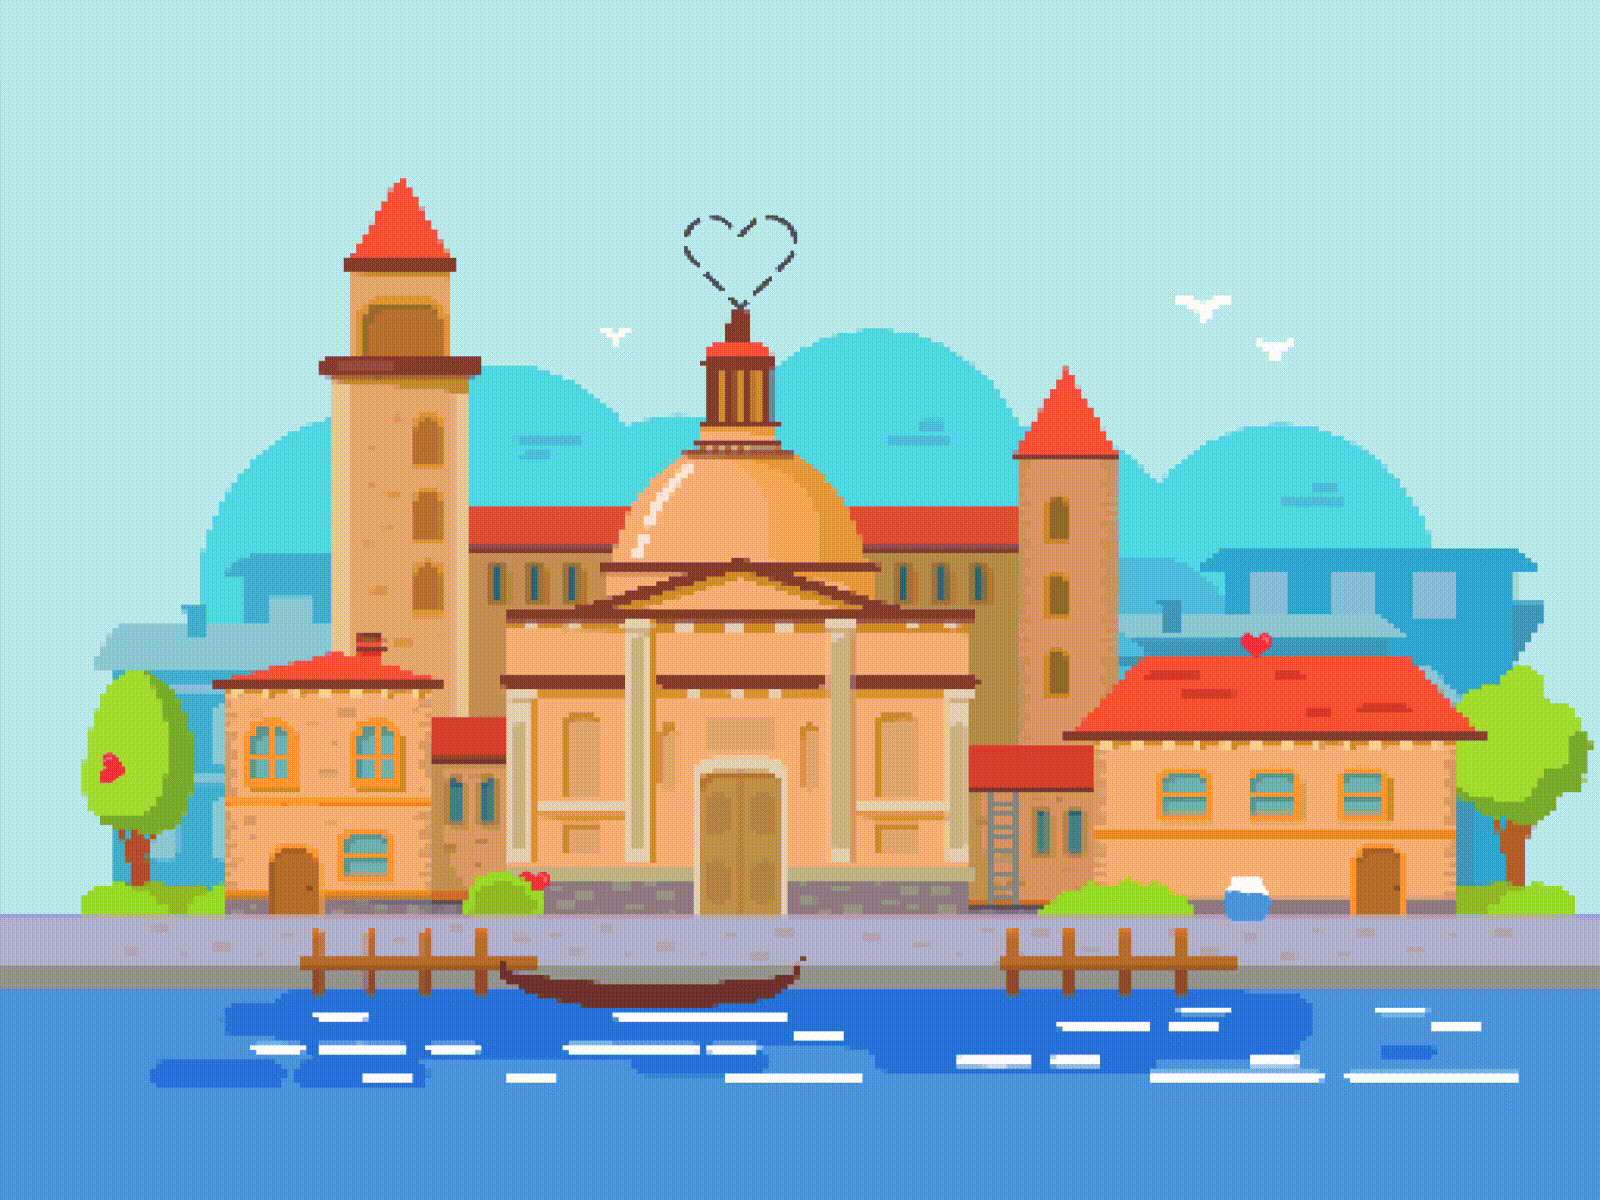 Venise Arcade Game - Animated pixelart